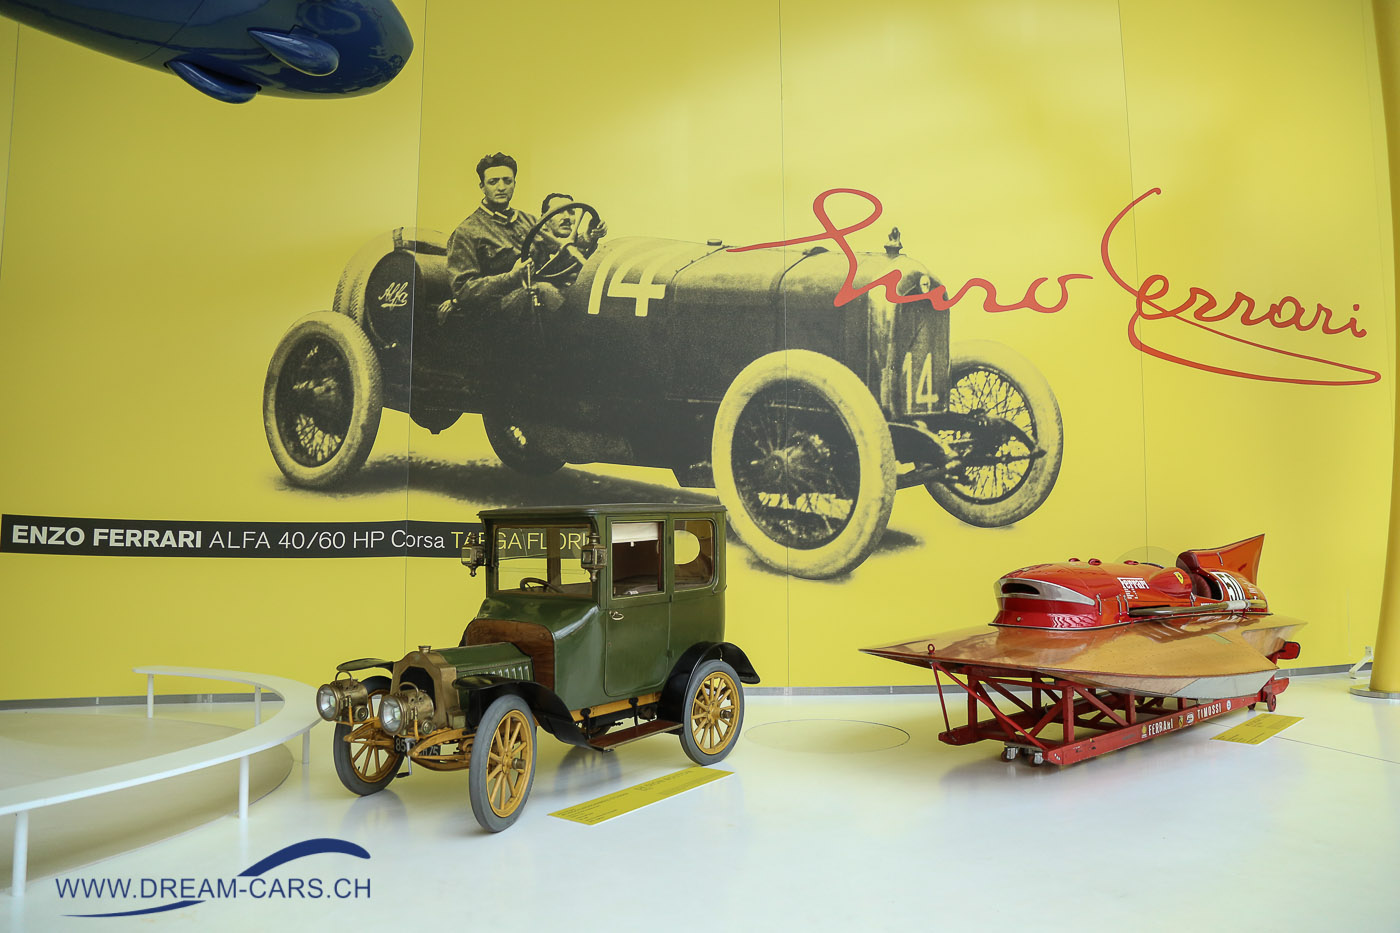 MEF - Museo Enzo Ferrari in Modena, Besuch am 20. Mai 2017